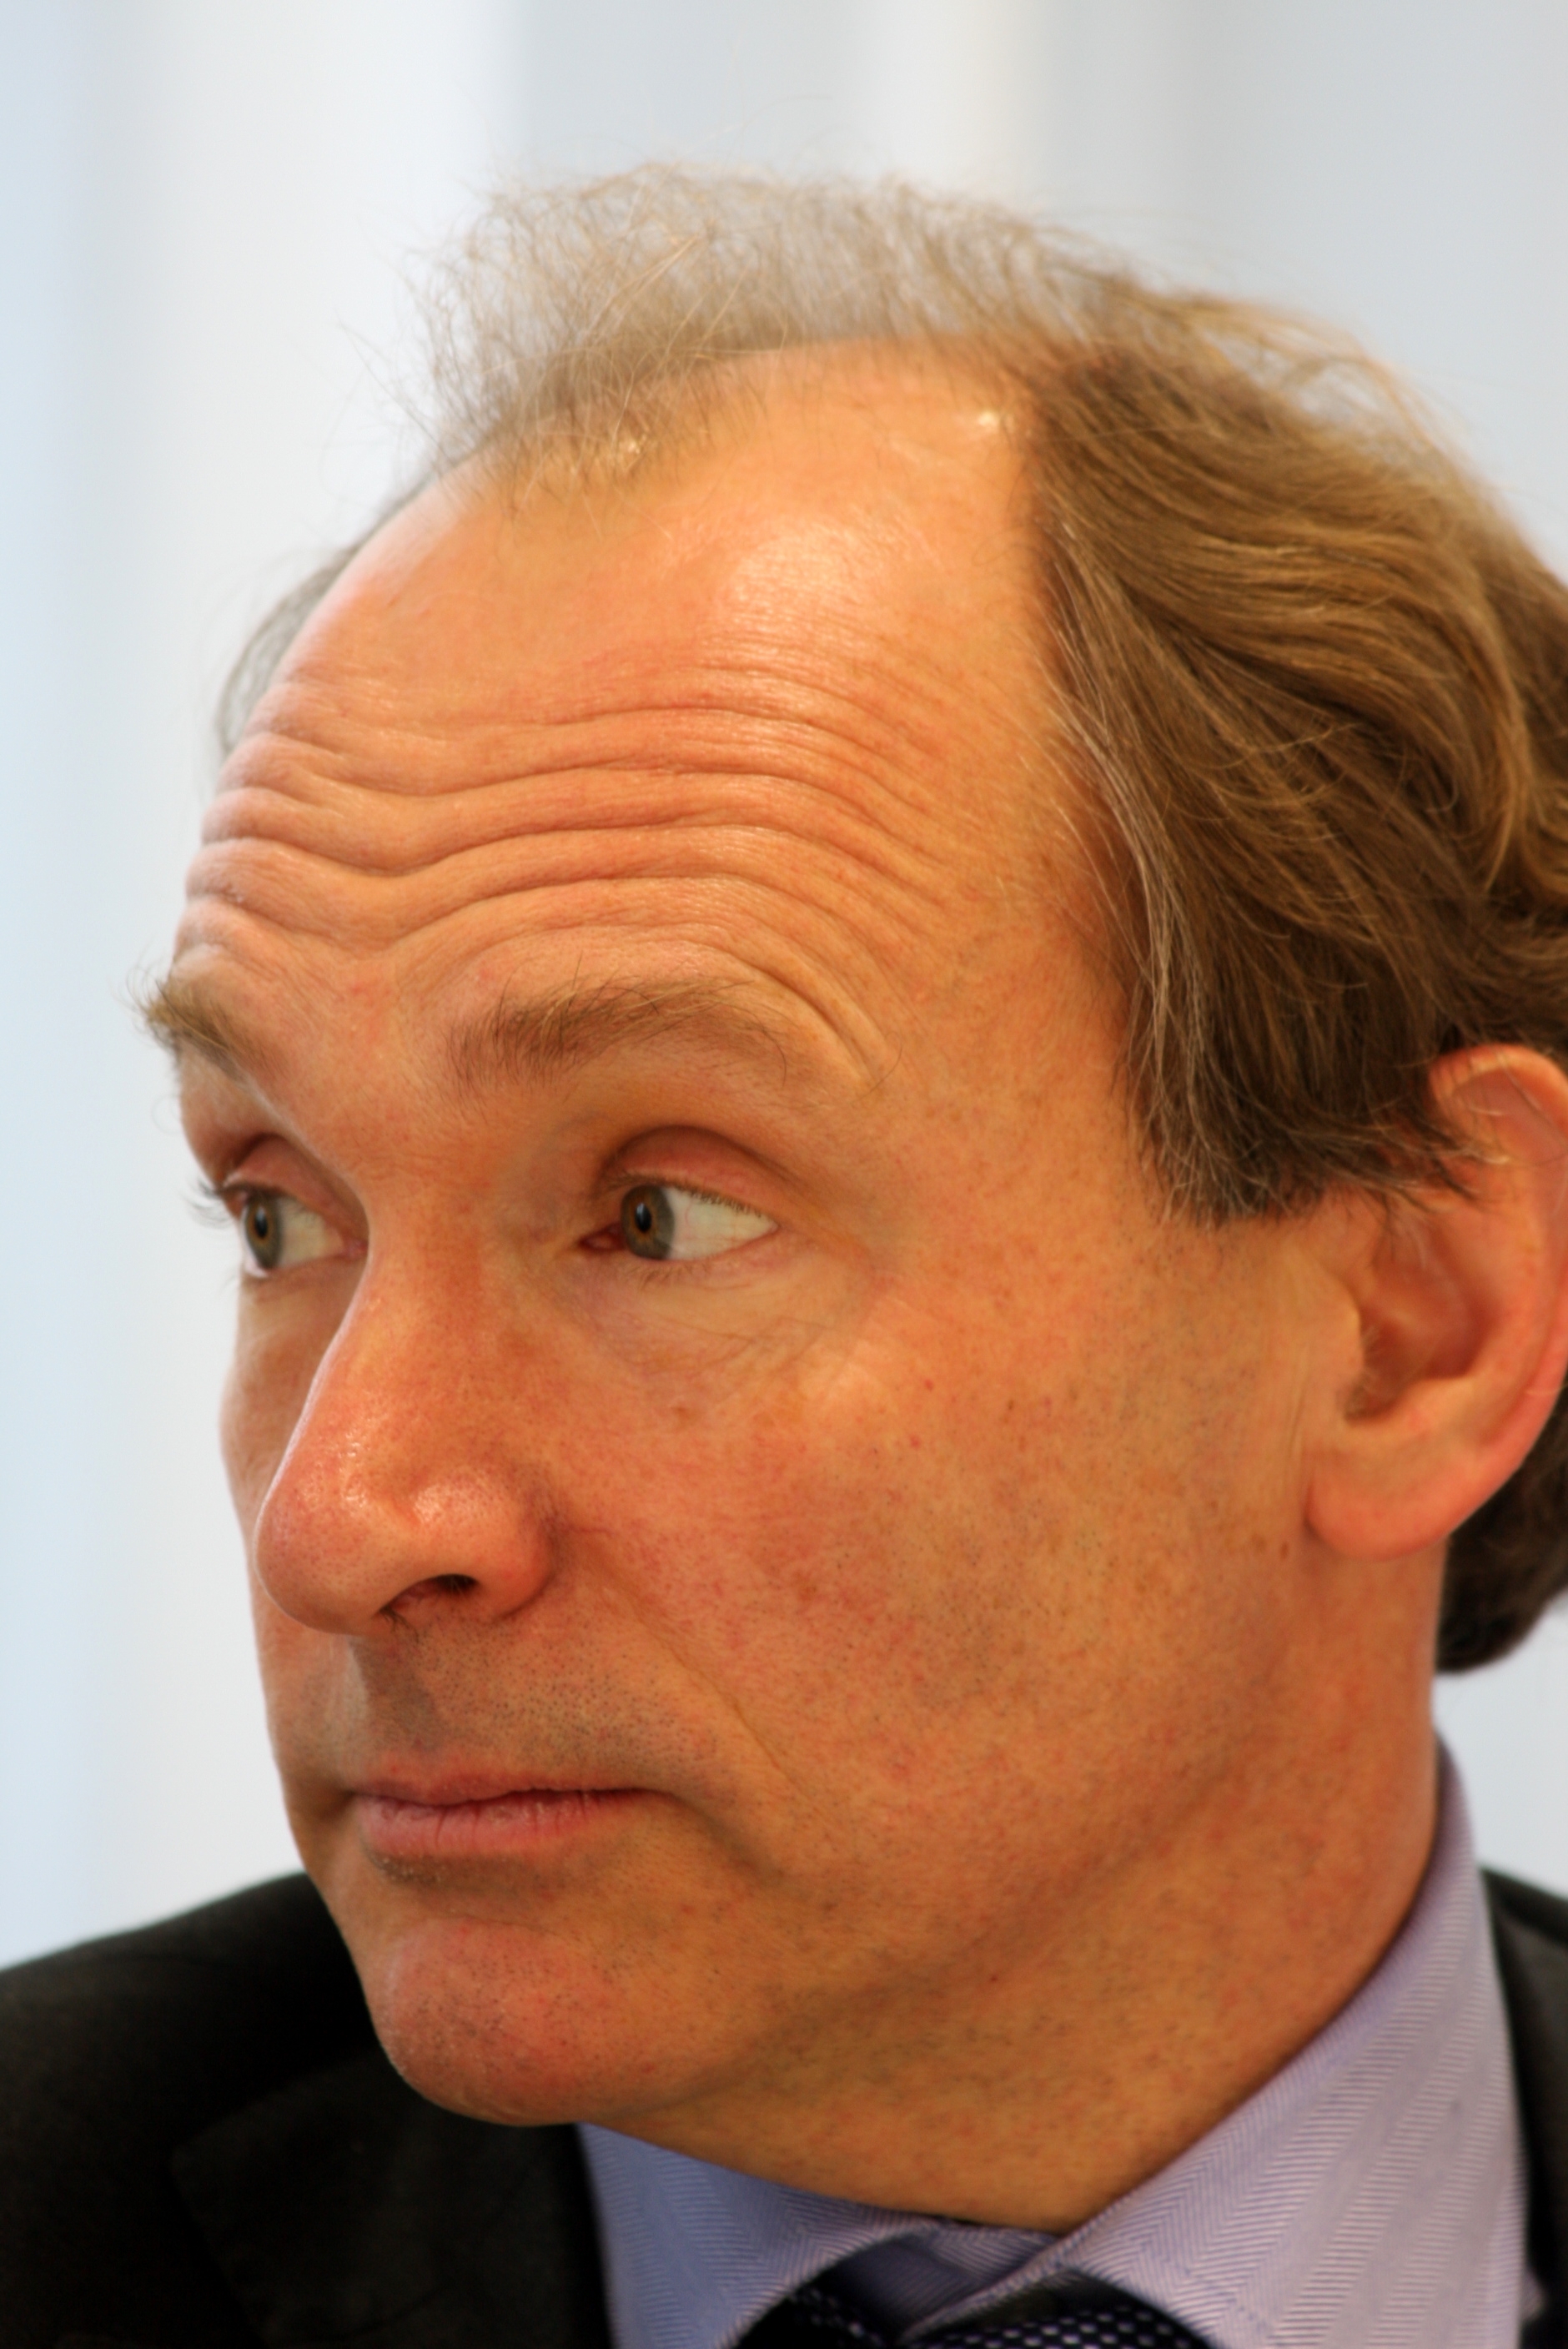 auteur Tim Berners-Lee de la citation Il est temps de reconnaître Internet comme un droit humain de base. Cela signifie garantir un accès abordable pour tous, garantir que les paquets Internet sont livrés sans discrimination commerciale ou politique et protégeant la confidentialité et la liberté des utilisateurs du Web, peu importe où ils vivent.